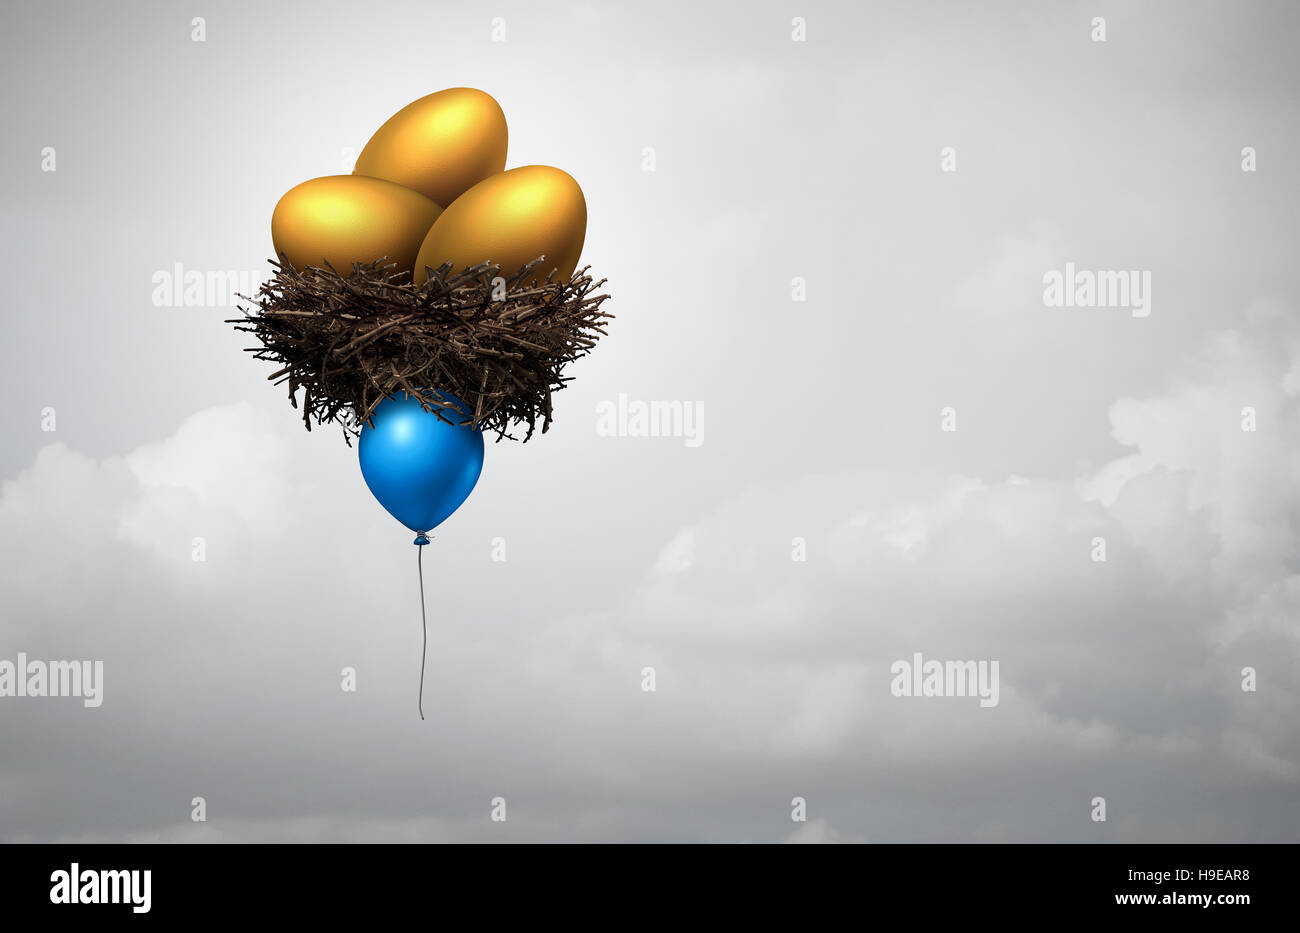 Asesoramiento en inversiones financieras concepto como un globo azul levantando un nido con huevos de oro como la banca o invertir la metáfora de fondo de jubilación o de riesgo i Foto de stock